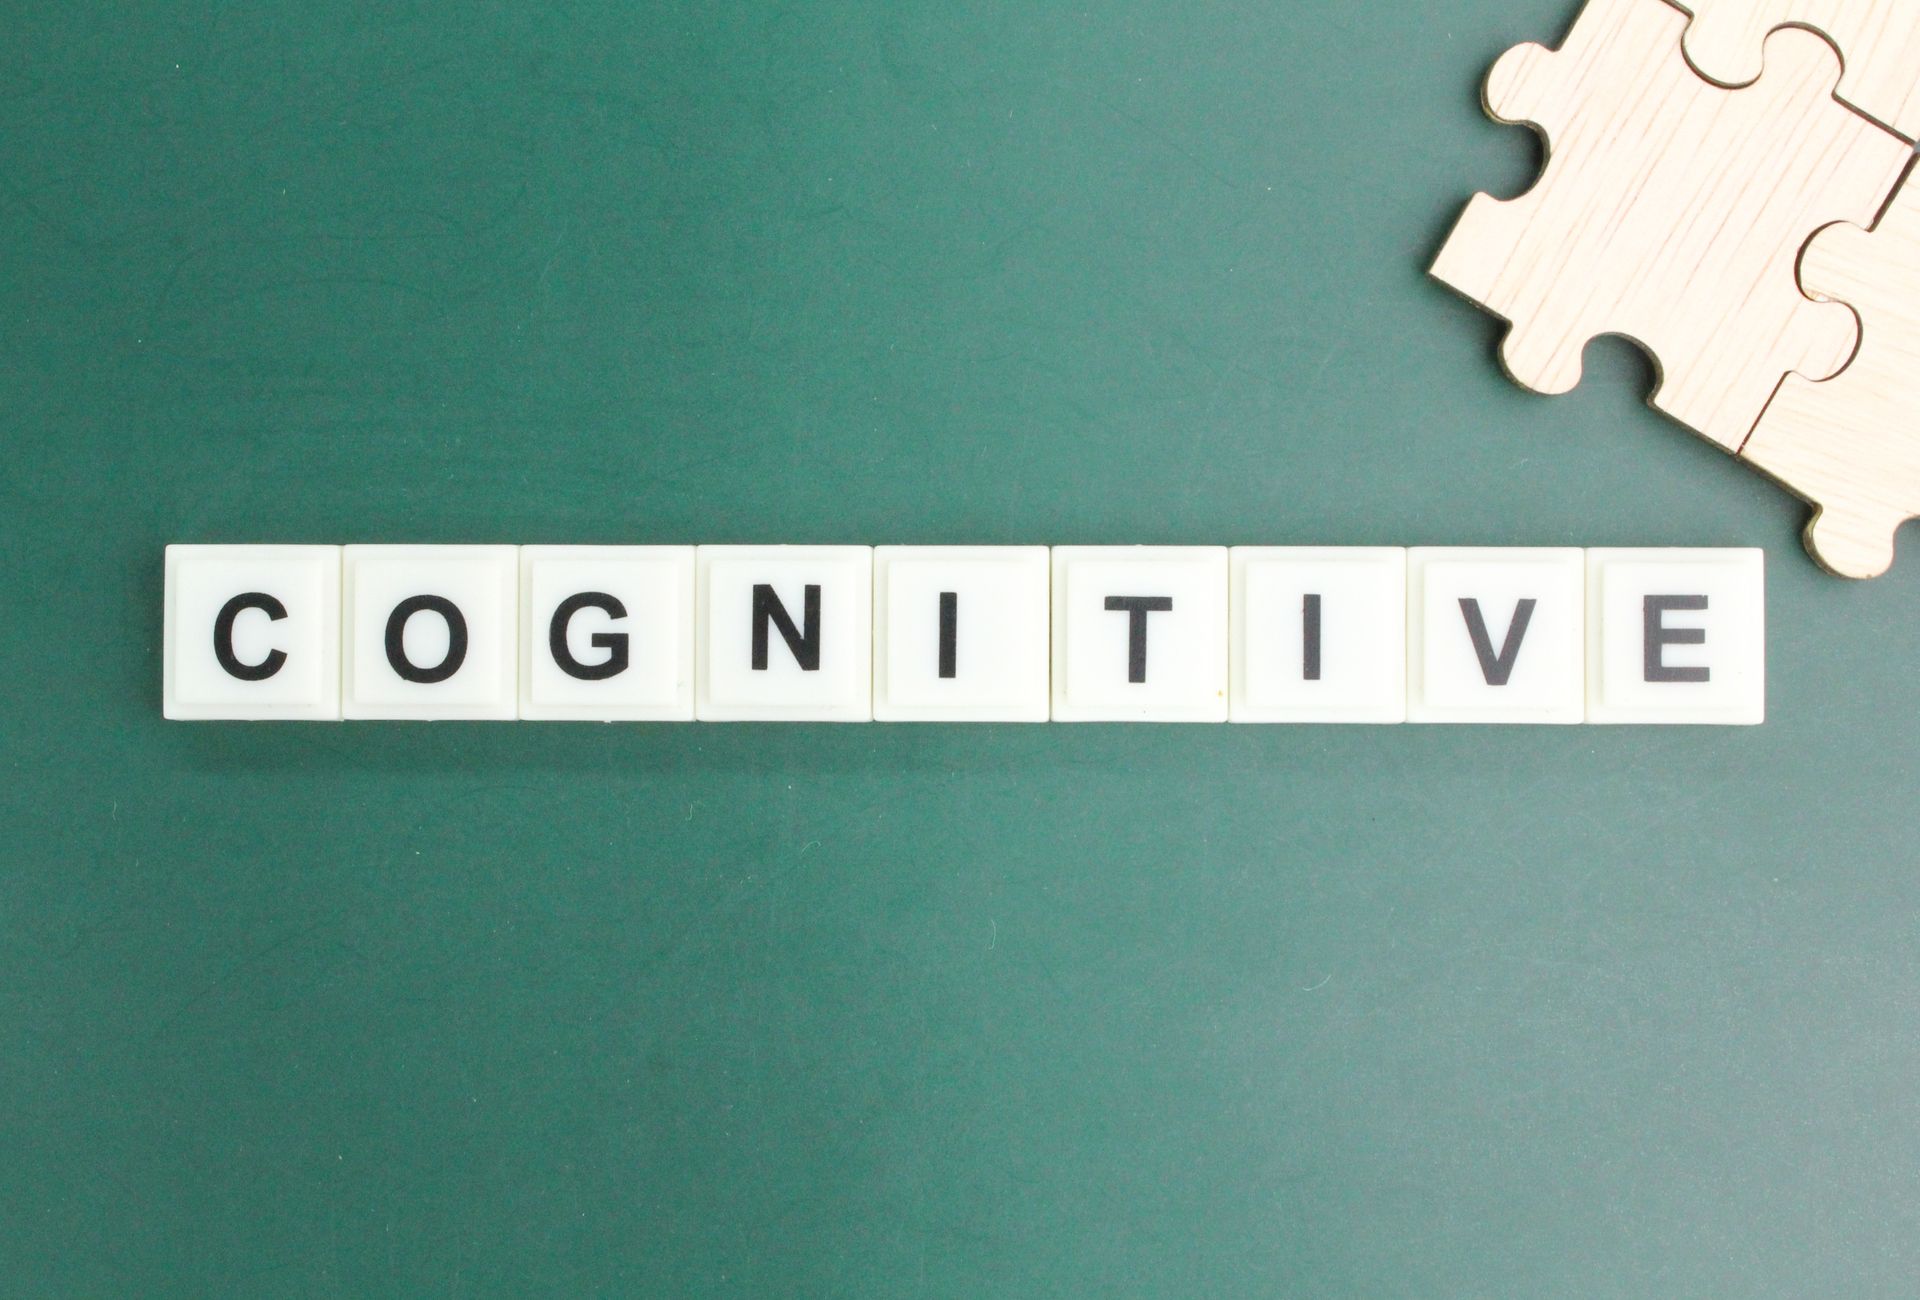 a palavra cognitivo está escrita em um quadro negro ao lado de uma peça do quebra-cabeça